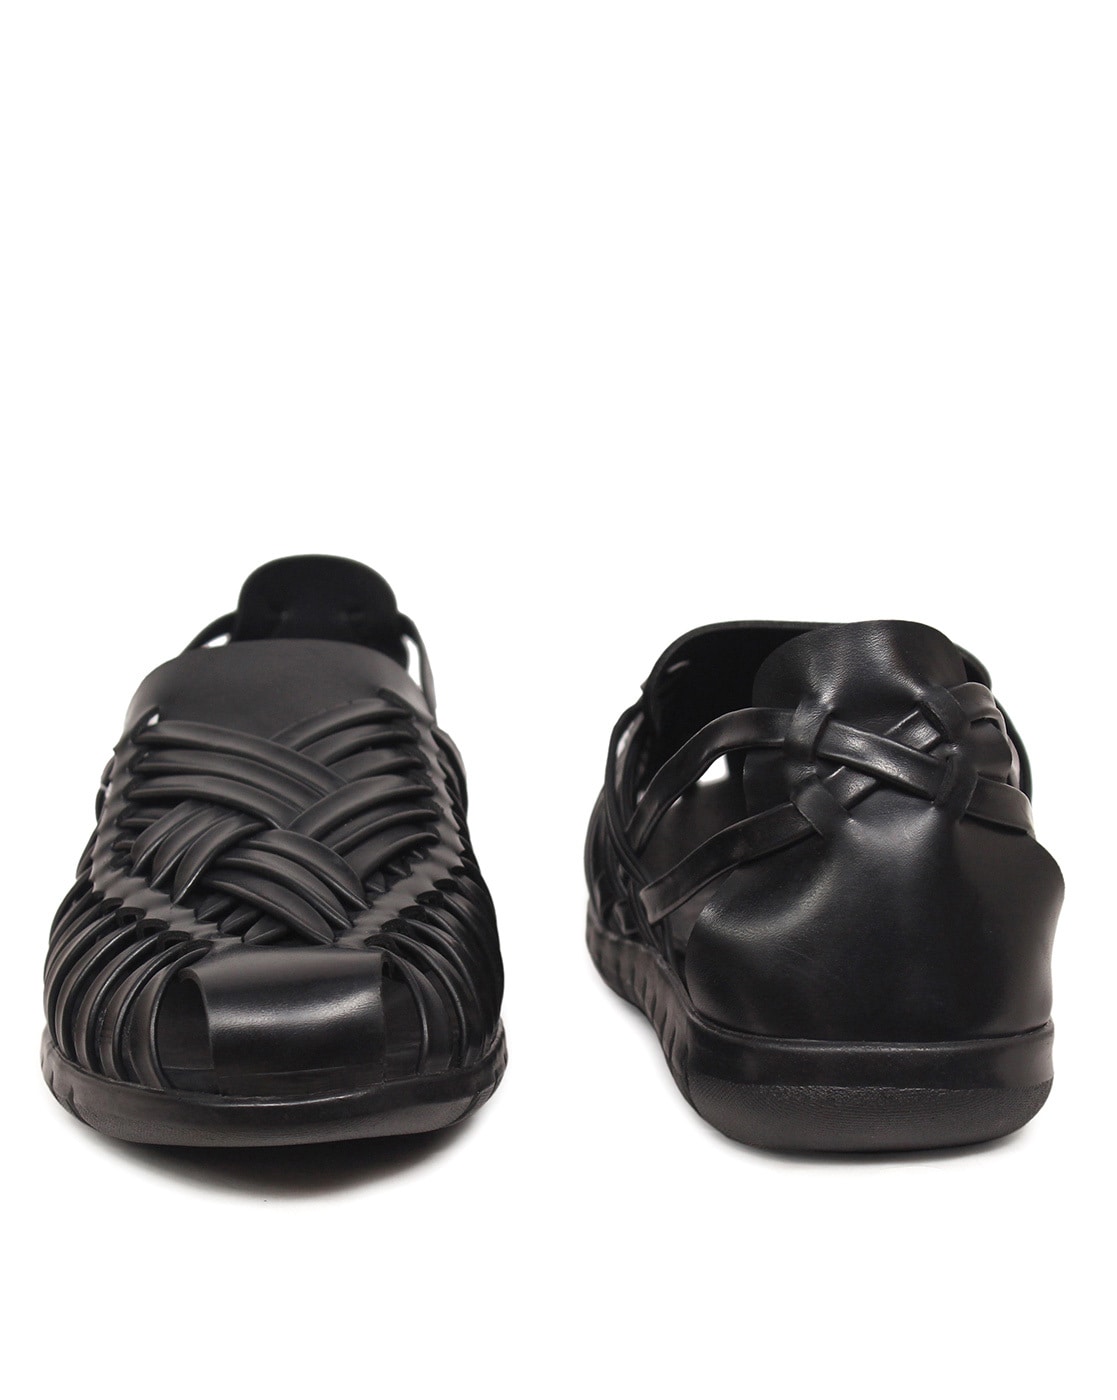 Buy Metro Women Black Woven Design Sandals - Heels for Women 7092479 |  Myntra